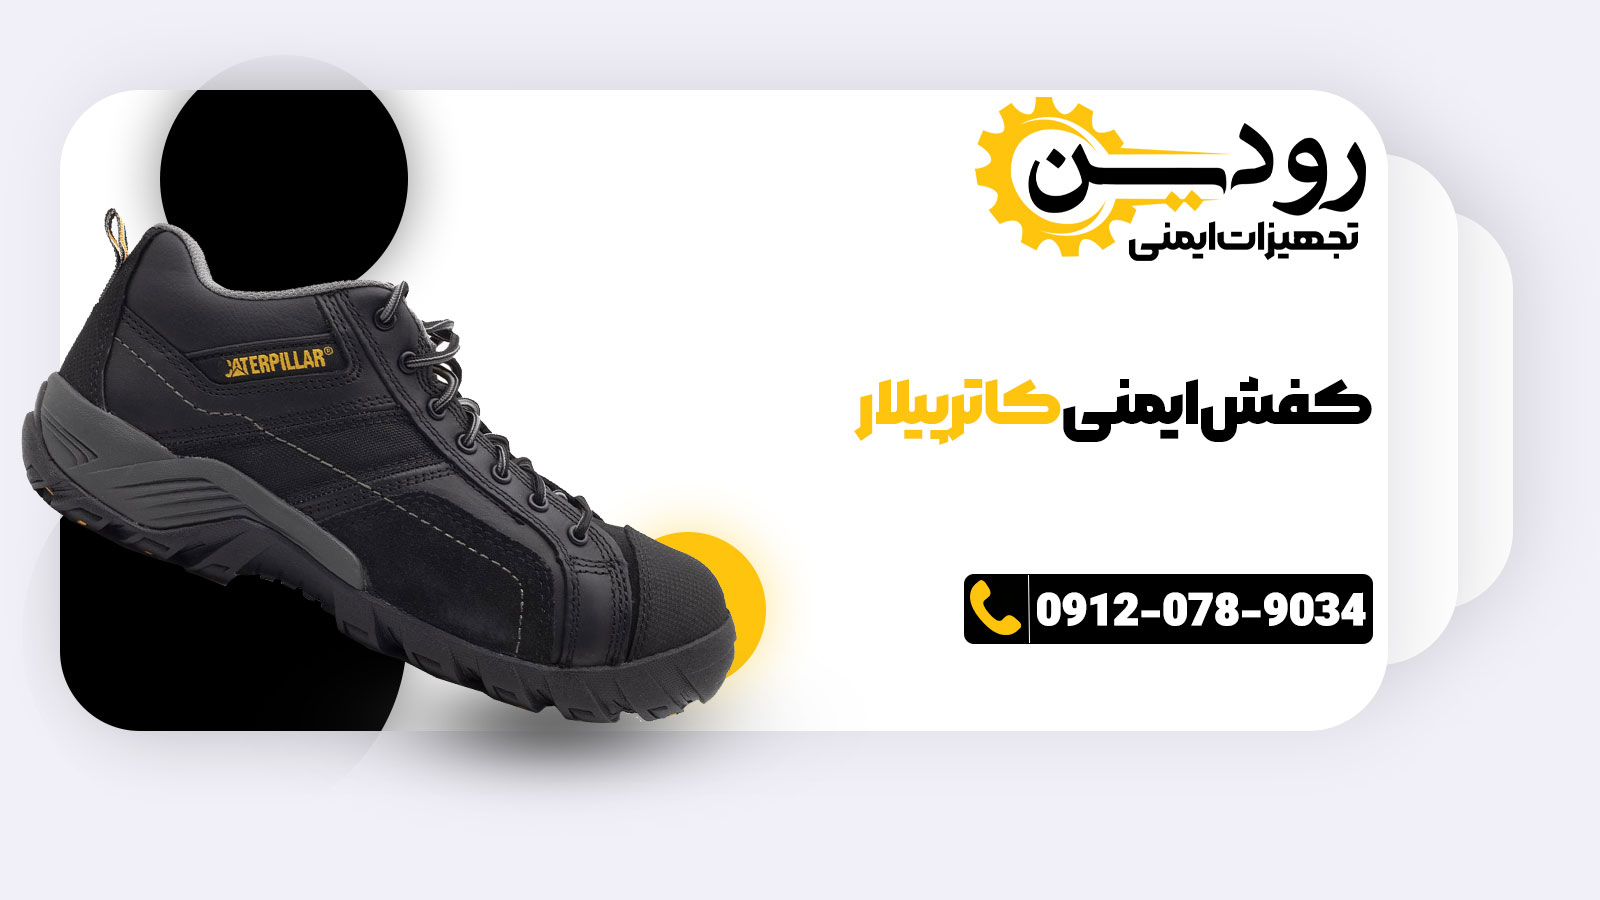 عسلویه بهترین مکان برای راه اندازی نمایندگی فروش کفش ایمنی کاترپیلار است.